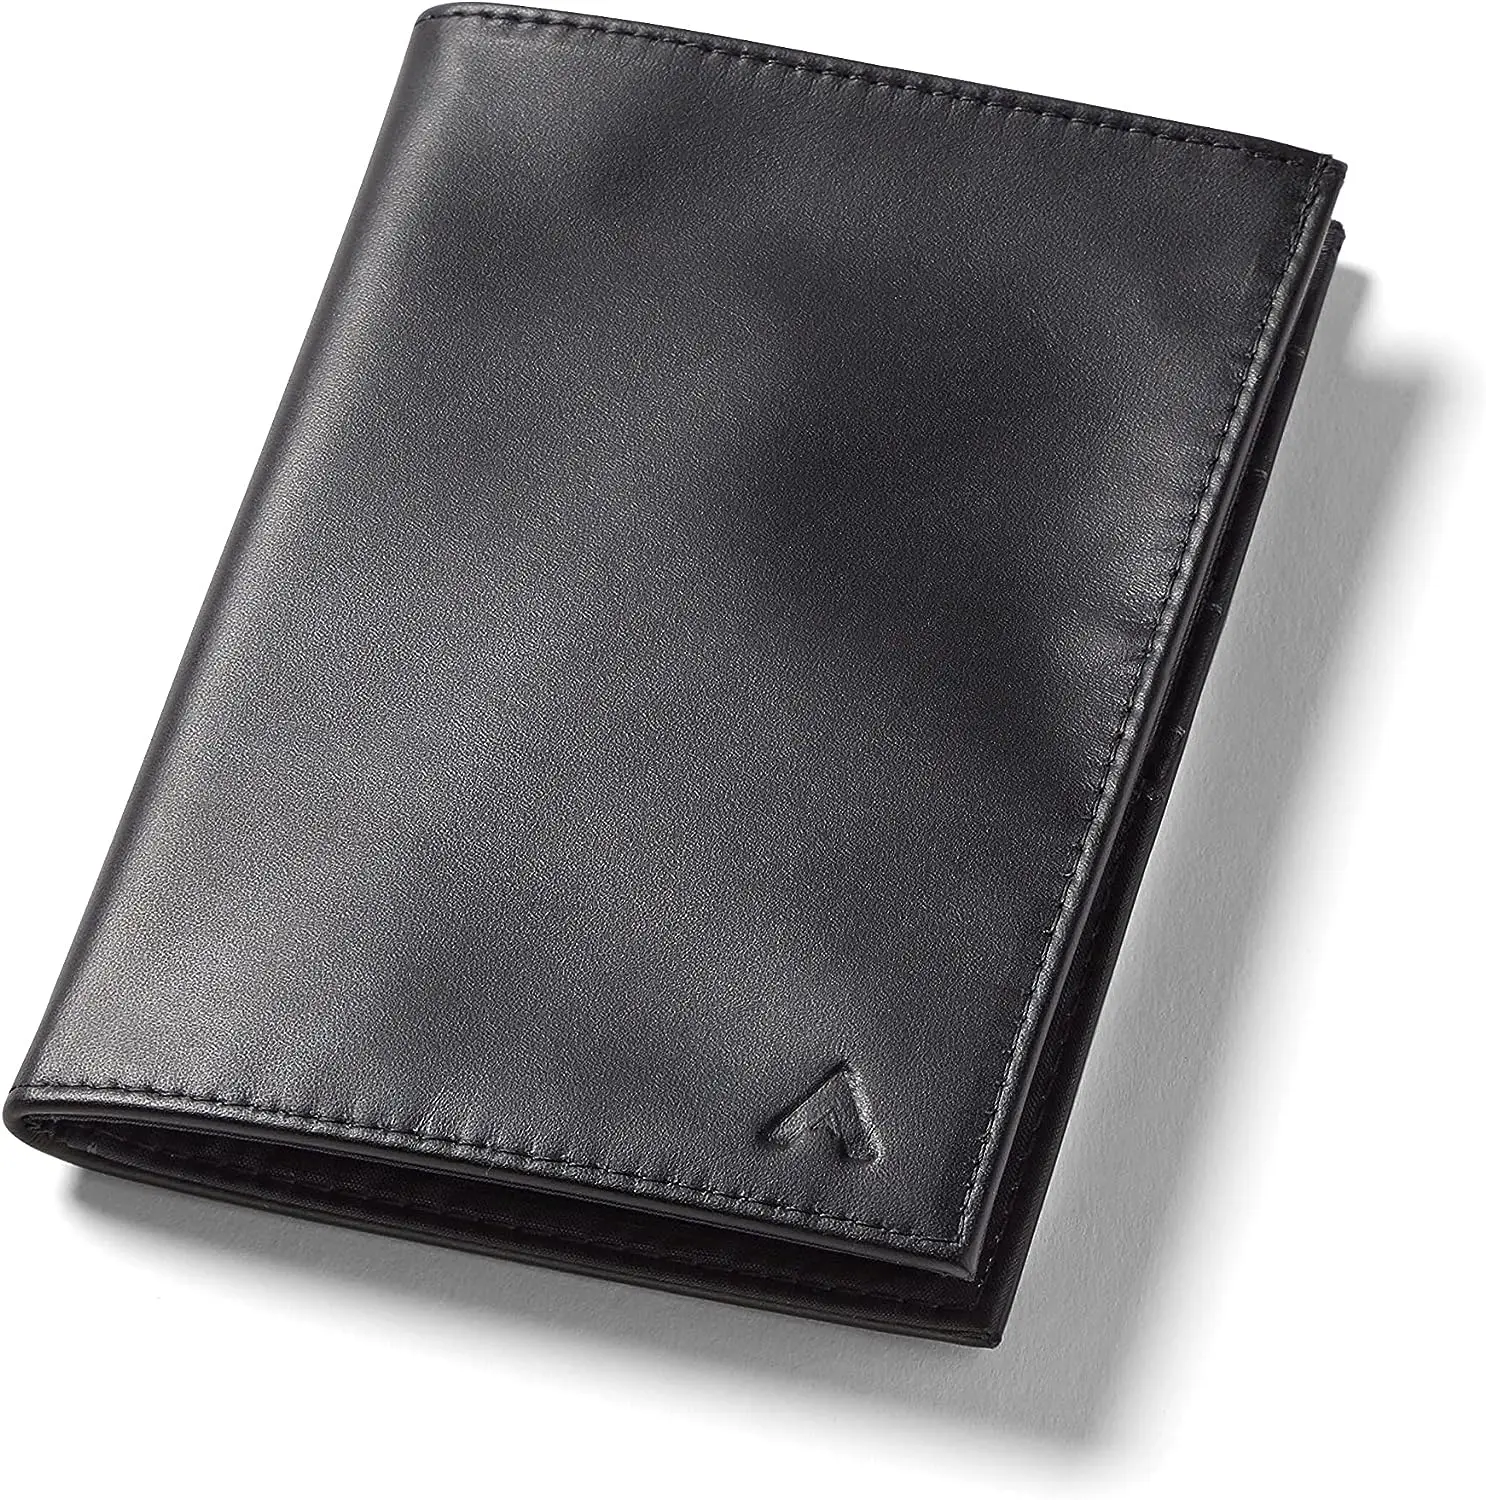 

Бумажник для паспорта, черный | Кожа, тонкий двойного сложения, минималистичный, передний карман, блокировка RFID | Вмещает 2-10 карт и паспорт | Для